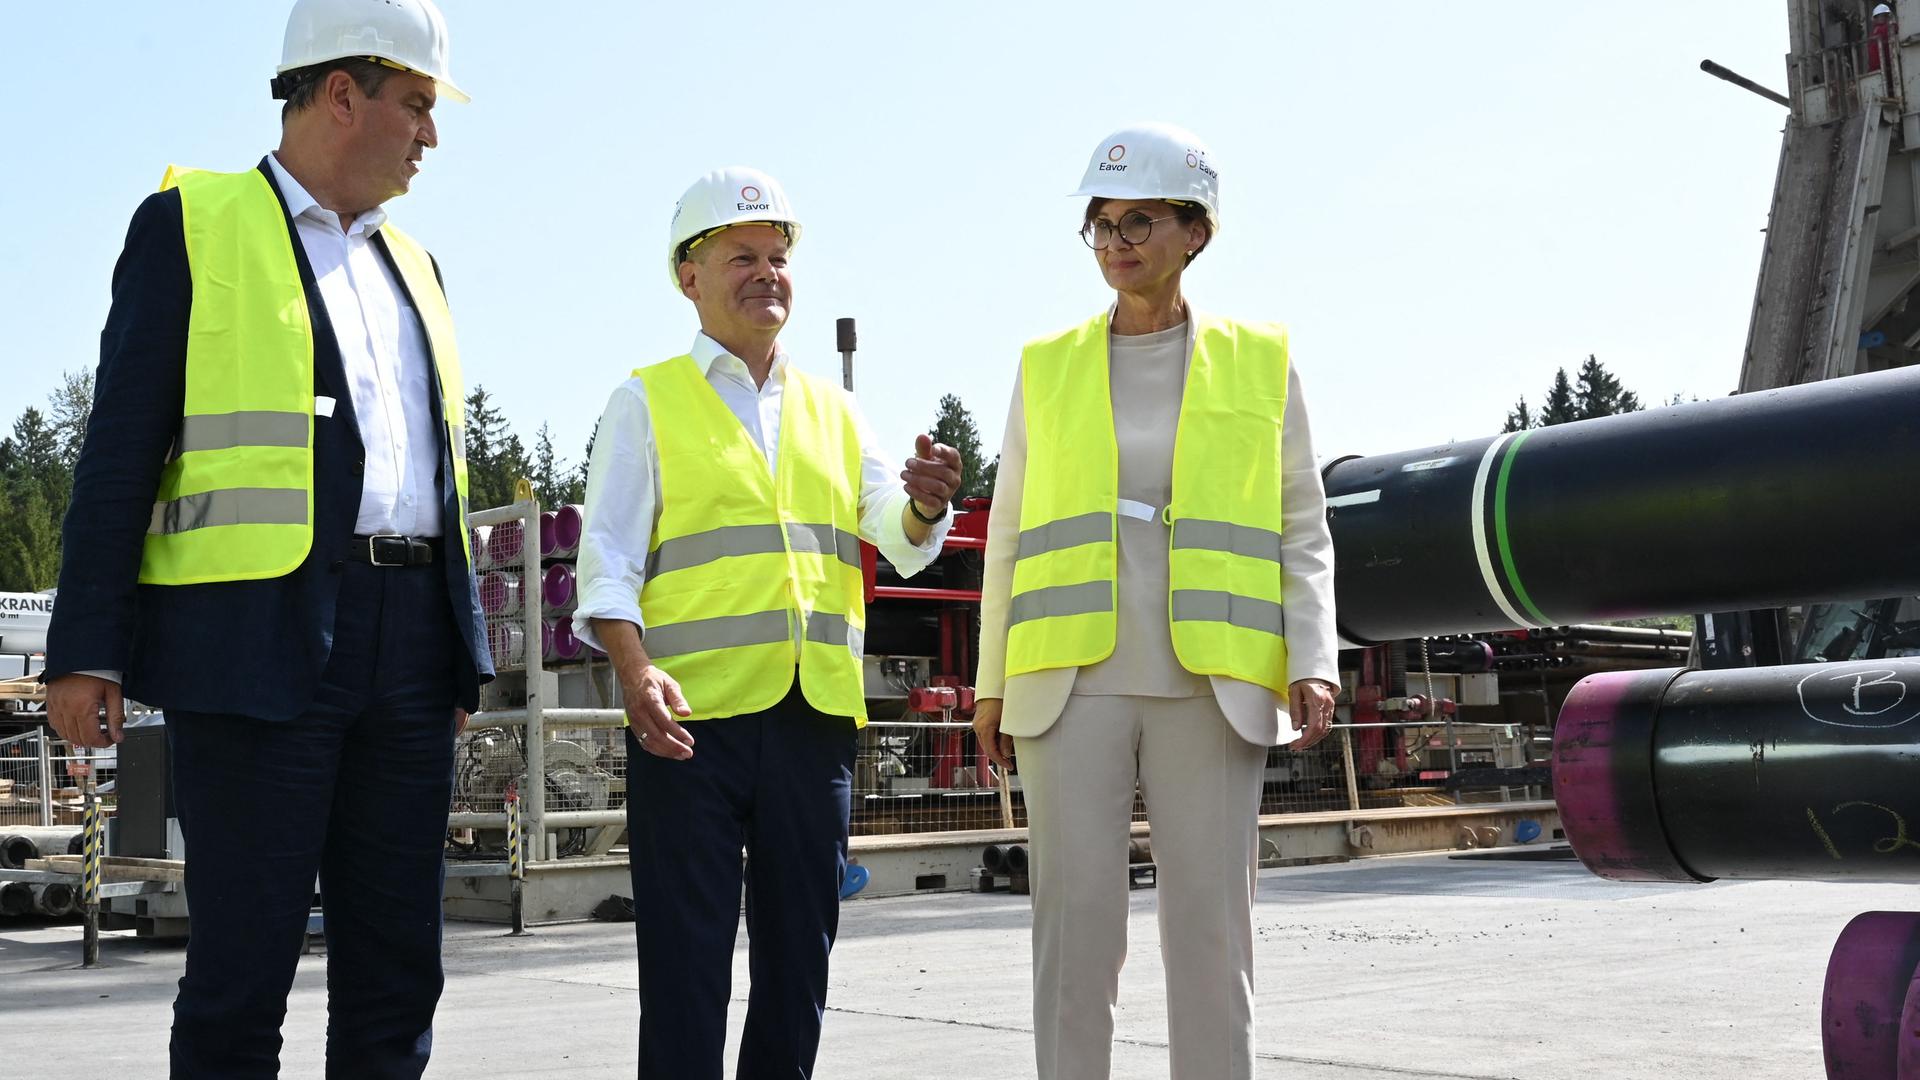 Bundeskanzler Scholz, der bayerische Ministerpräsident Söder und Bundesbildungsministerin Stark-Watzinger zu Besuch in einem Tiefen-Geothermiekraftwerk in Geretsried in Bayern. Sie tragen gelbe Sicherheitswesten und einen Schutzhelm.